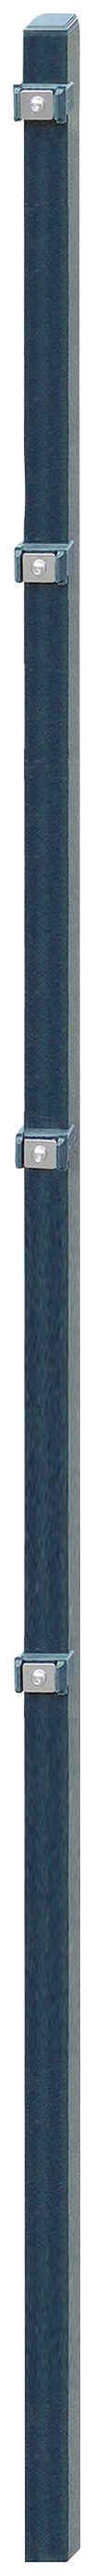 Arvotec Zaunpfosten ESSENTIAL 200, 4x4x260 cm für Mattenhöhe 200 cm, zum Einbetonieren